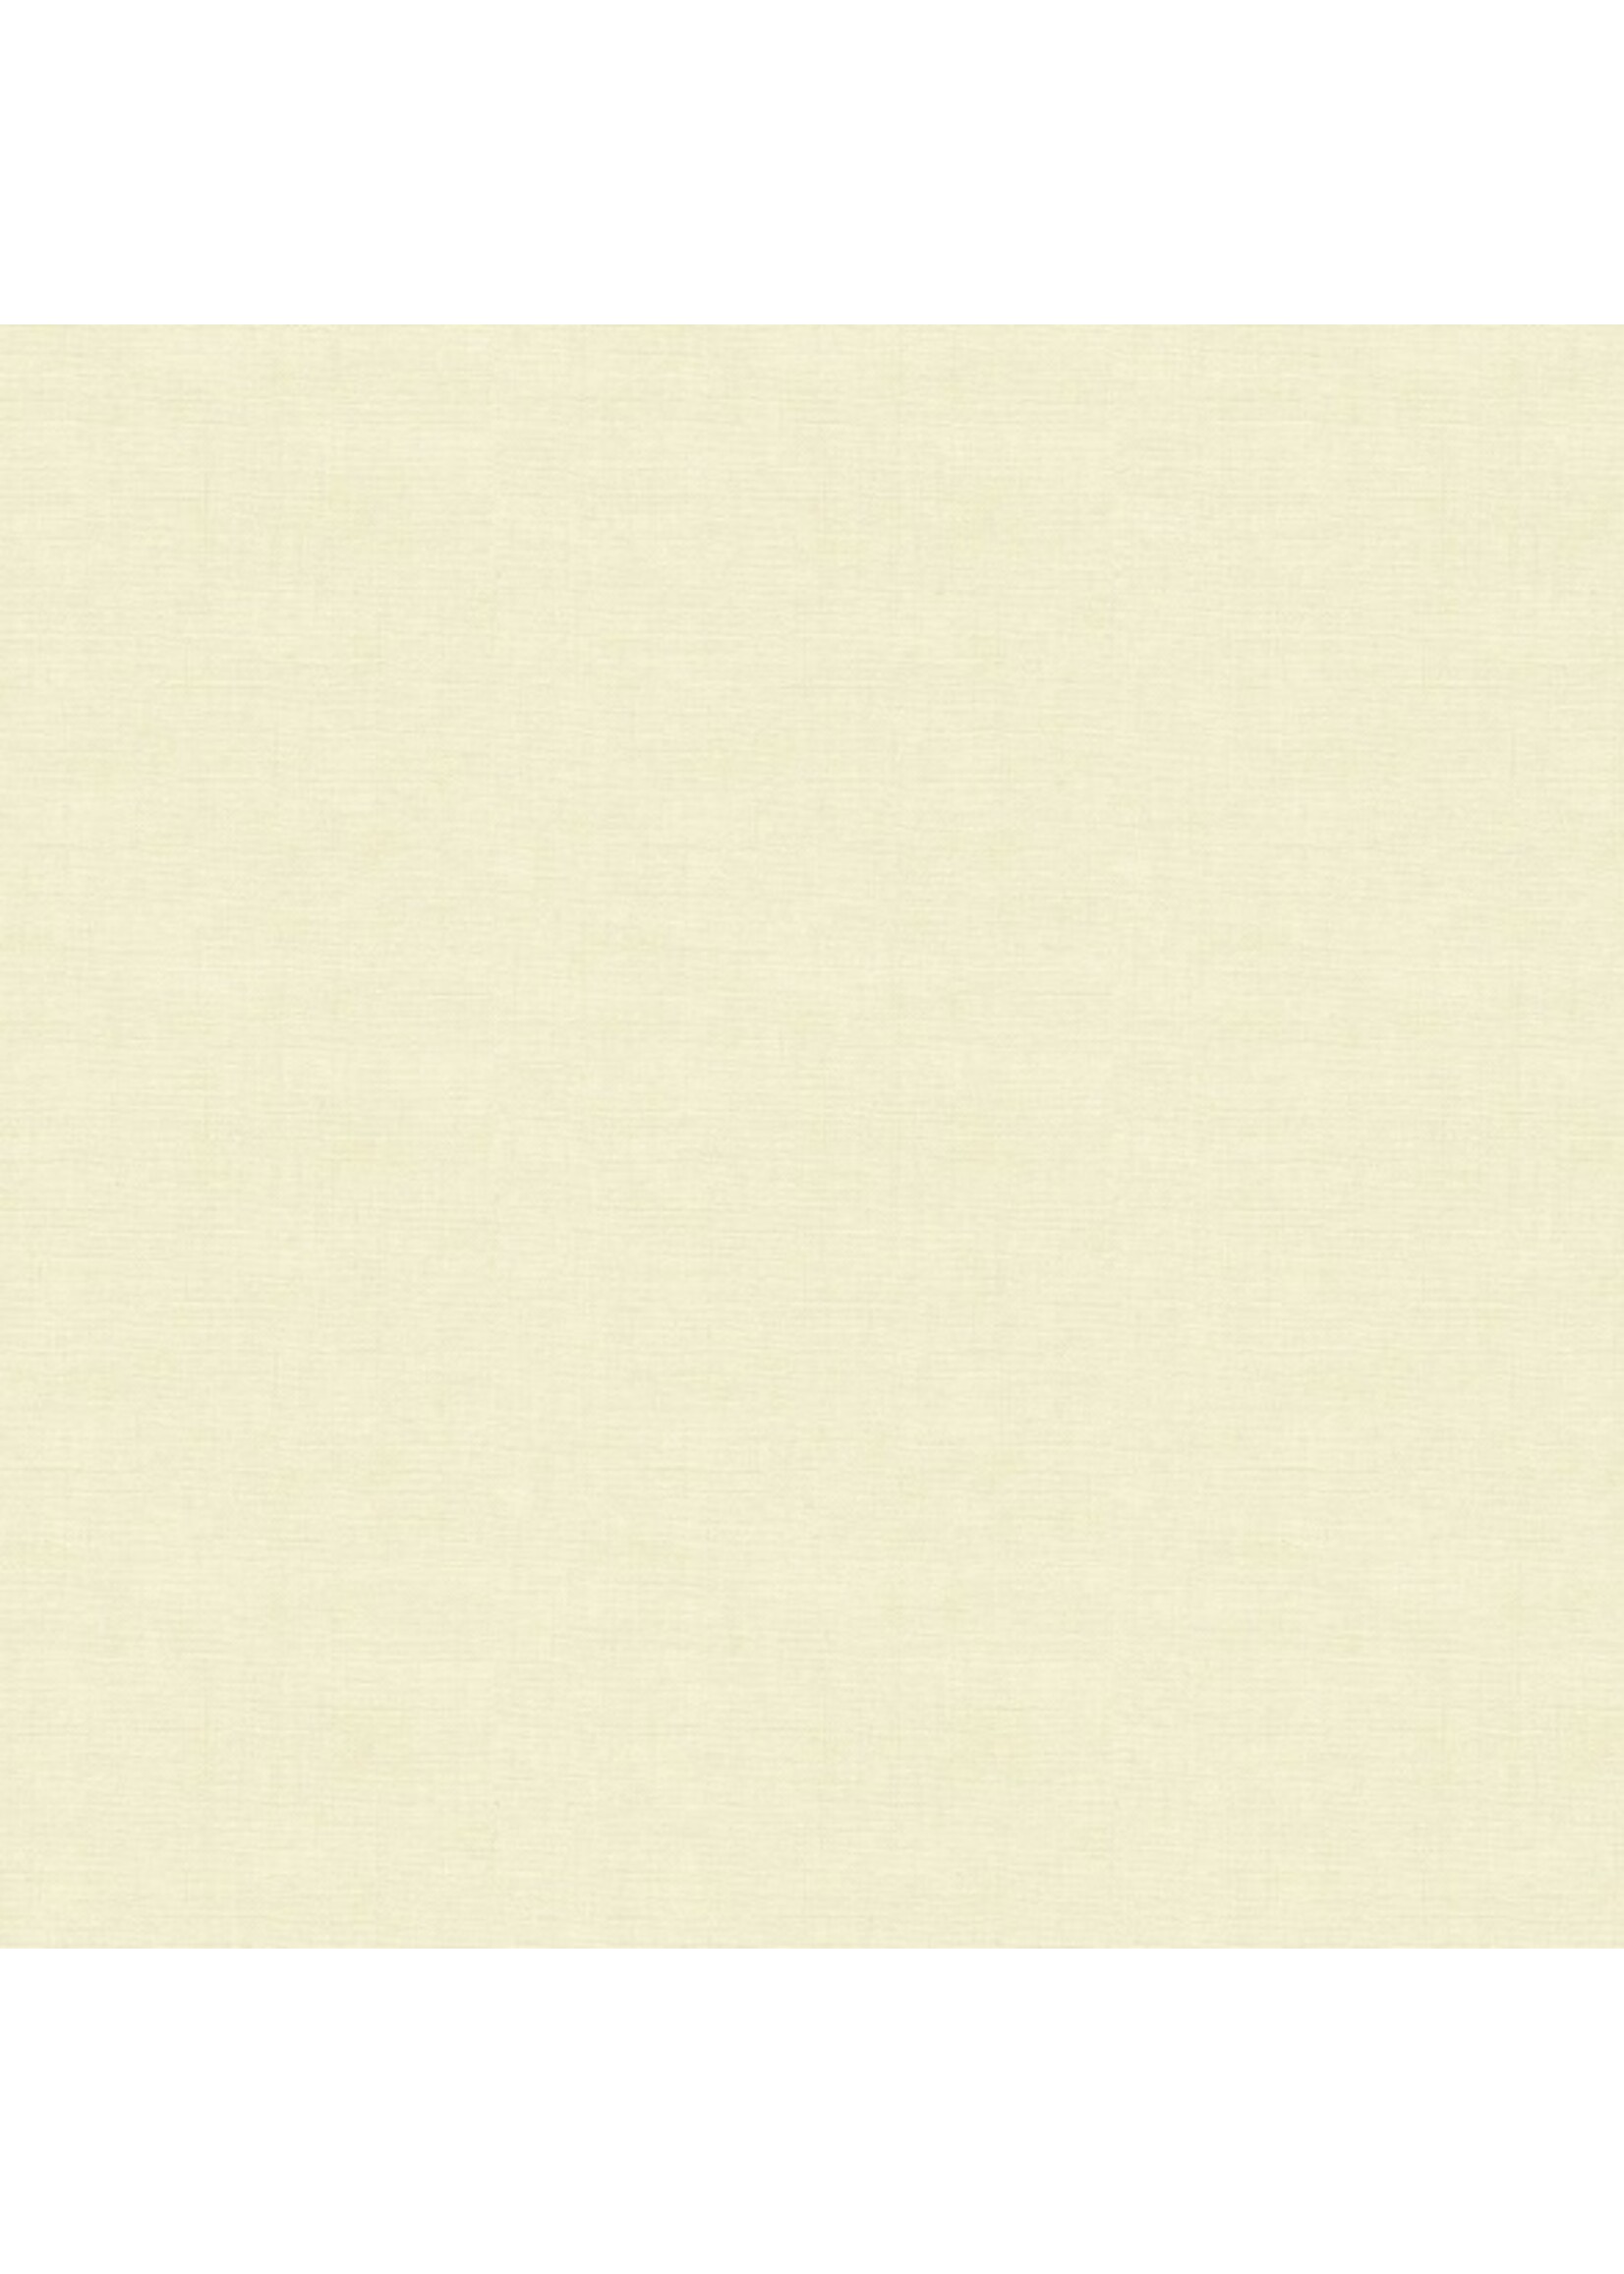 Makower Linen Texture - Light Cream - 1473Q2